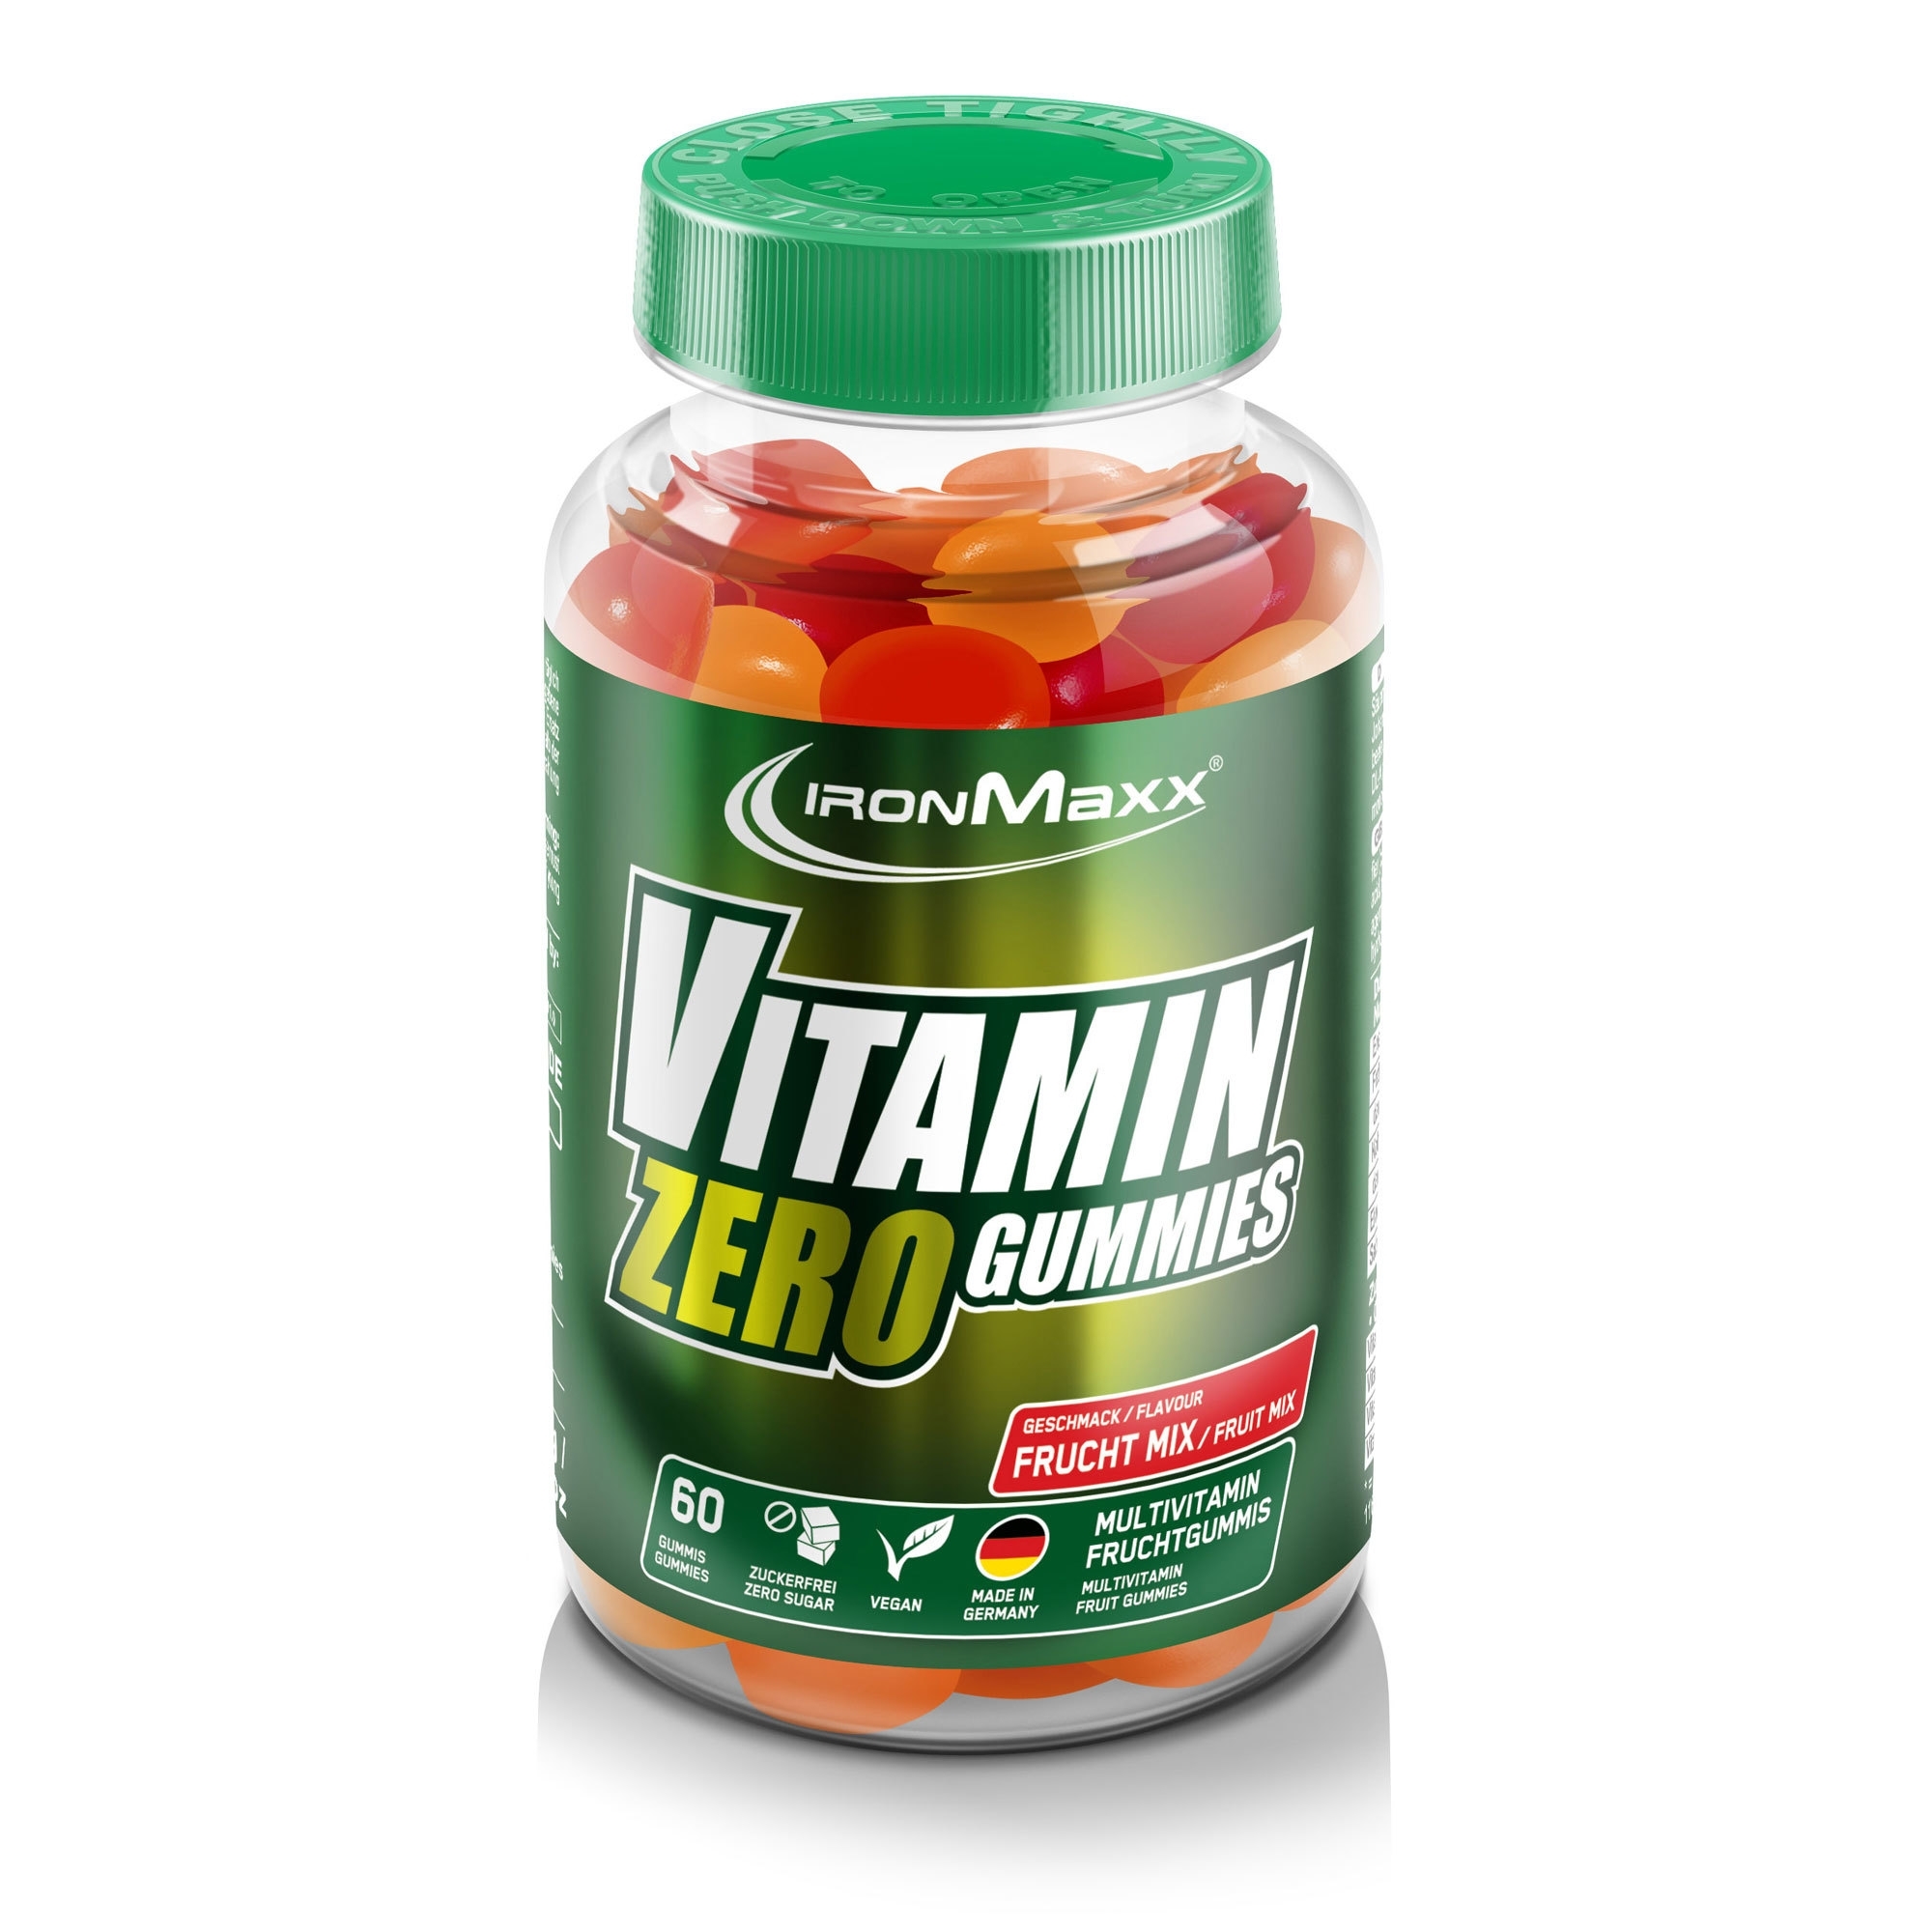 IronMaxx Vitamin Vegan Zero Gummis 60